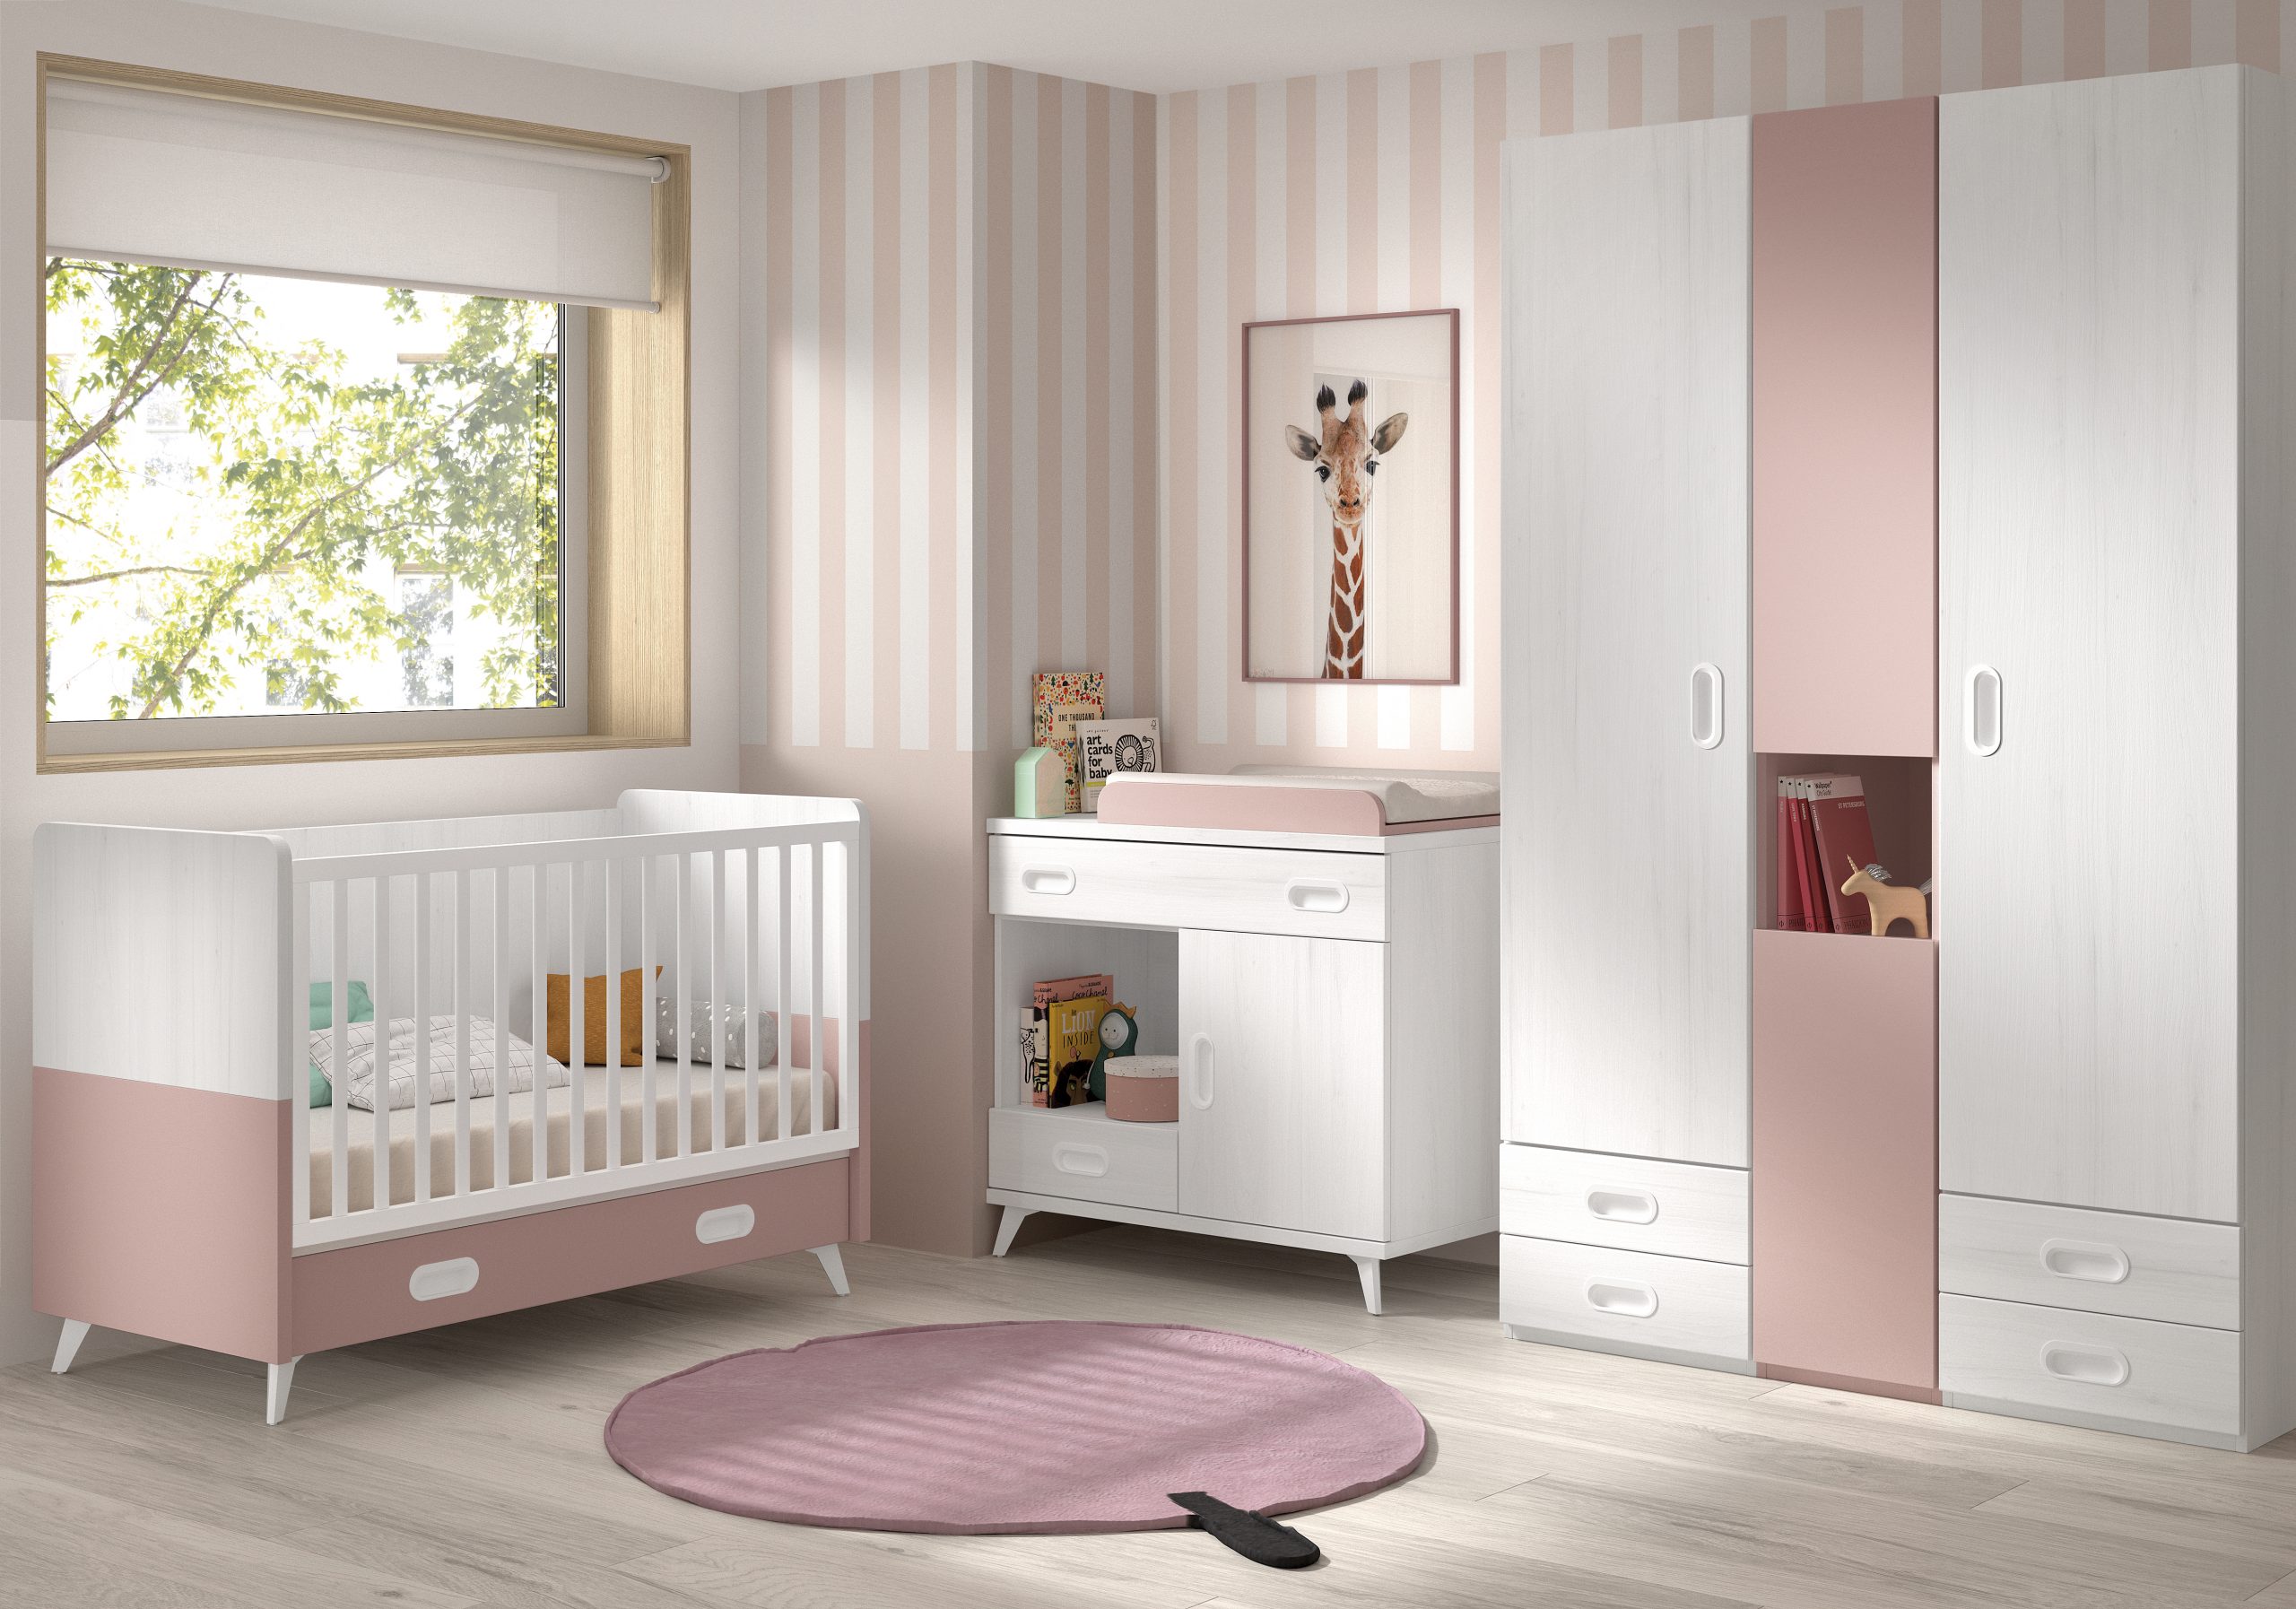 Dormitorio bebé con cuna Luxor – Muebles ROS - Muebles bebé